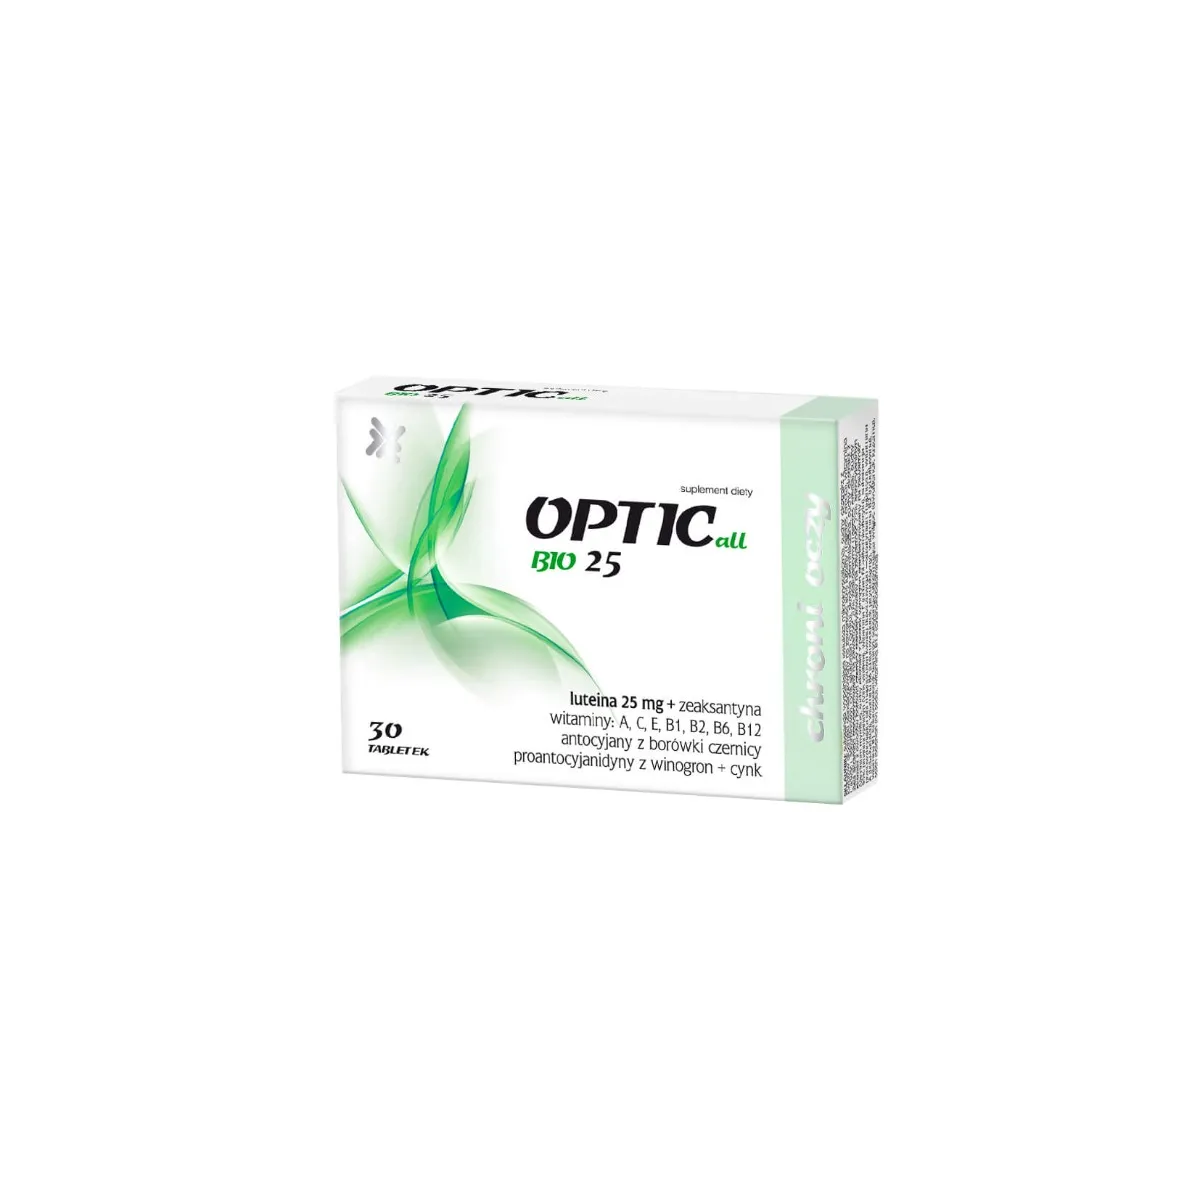 Opticall Bio 25, suplement diety, 30 tabletek